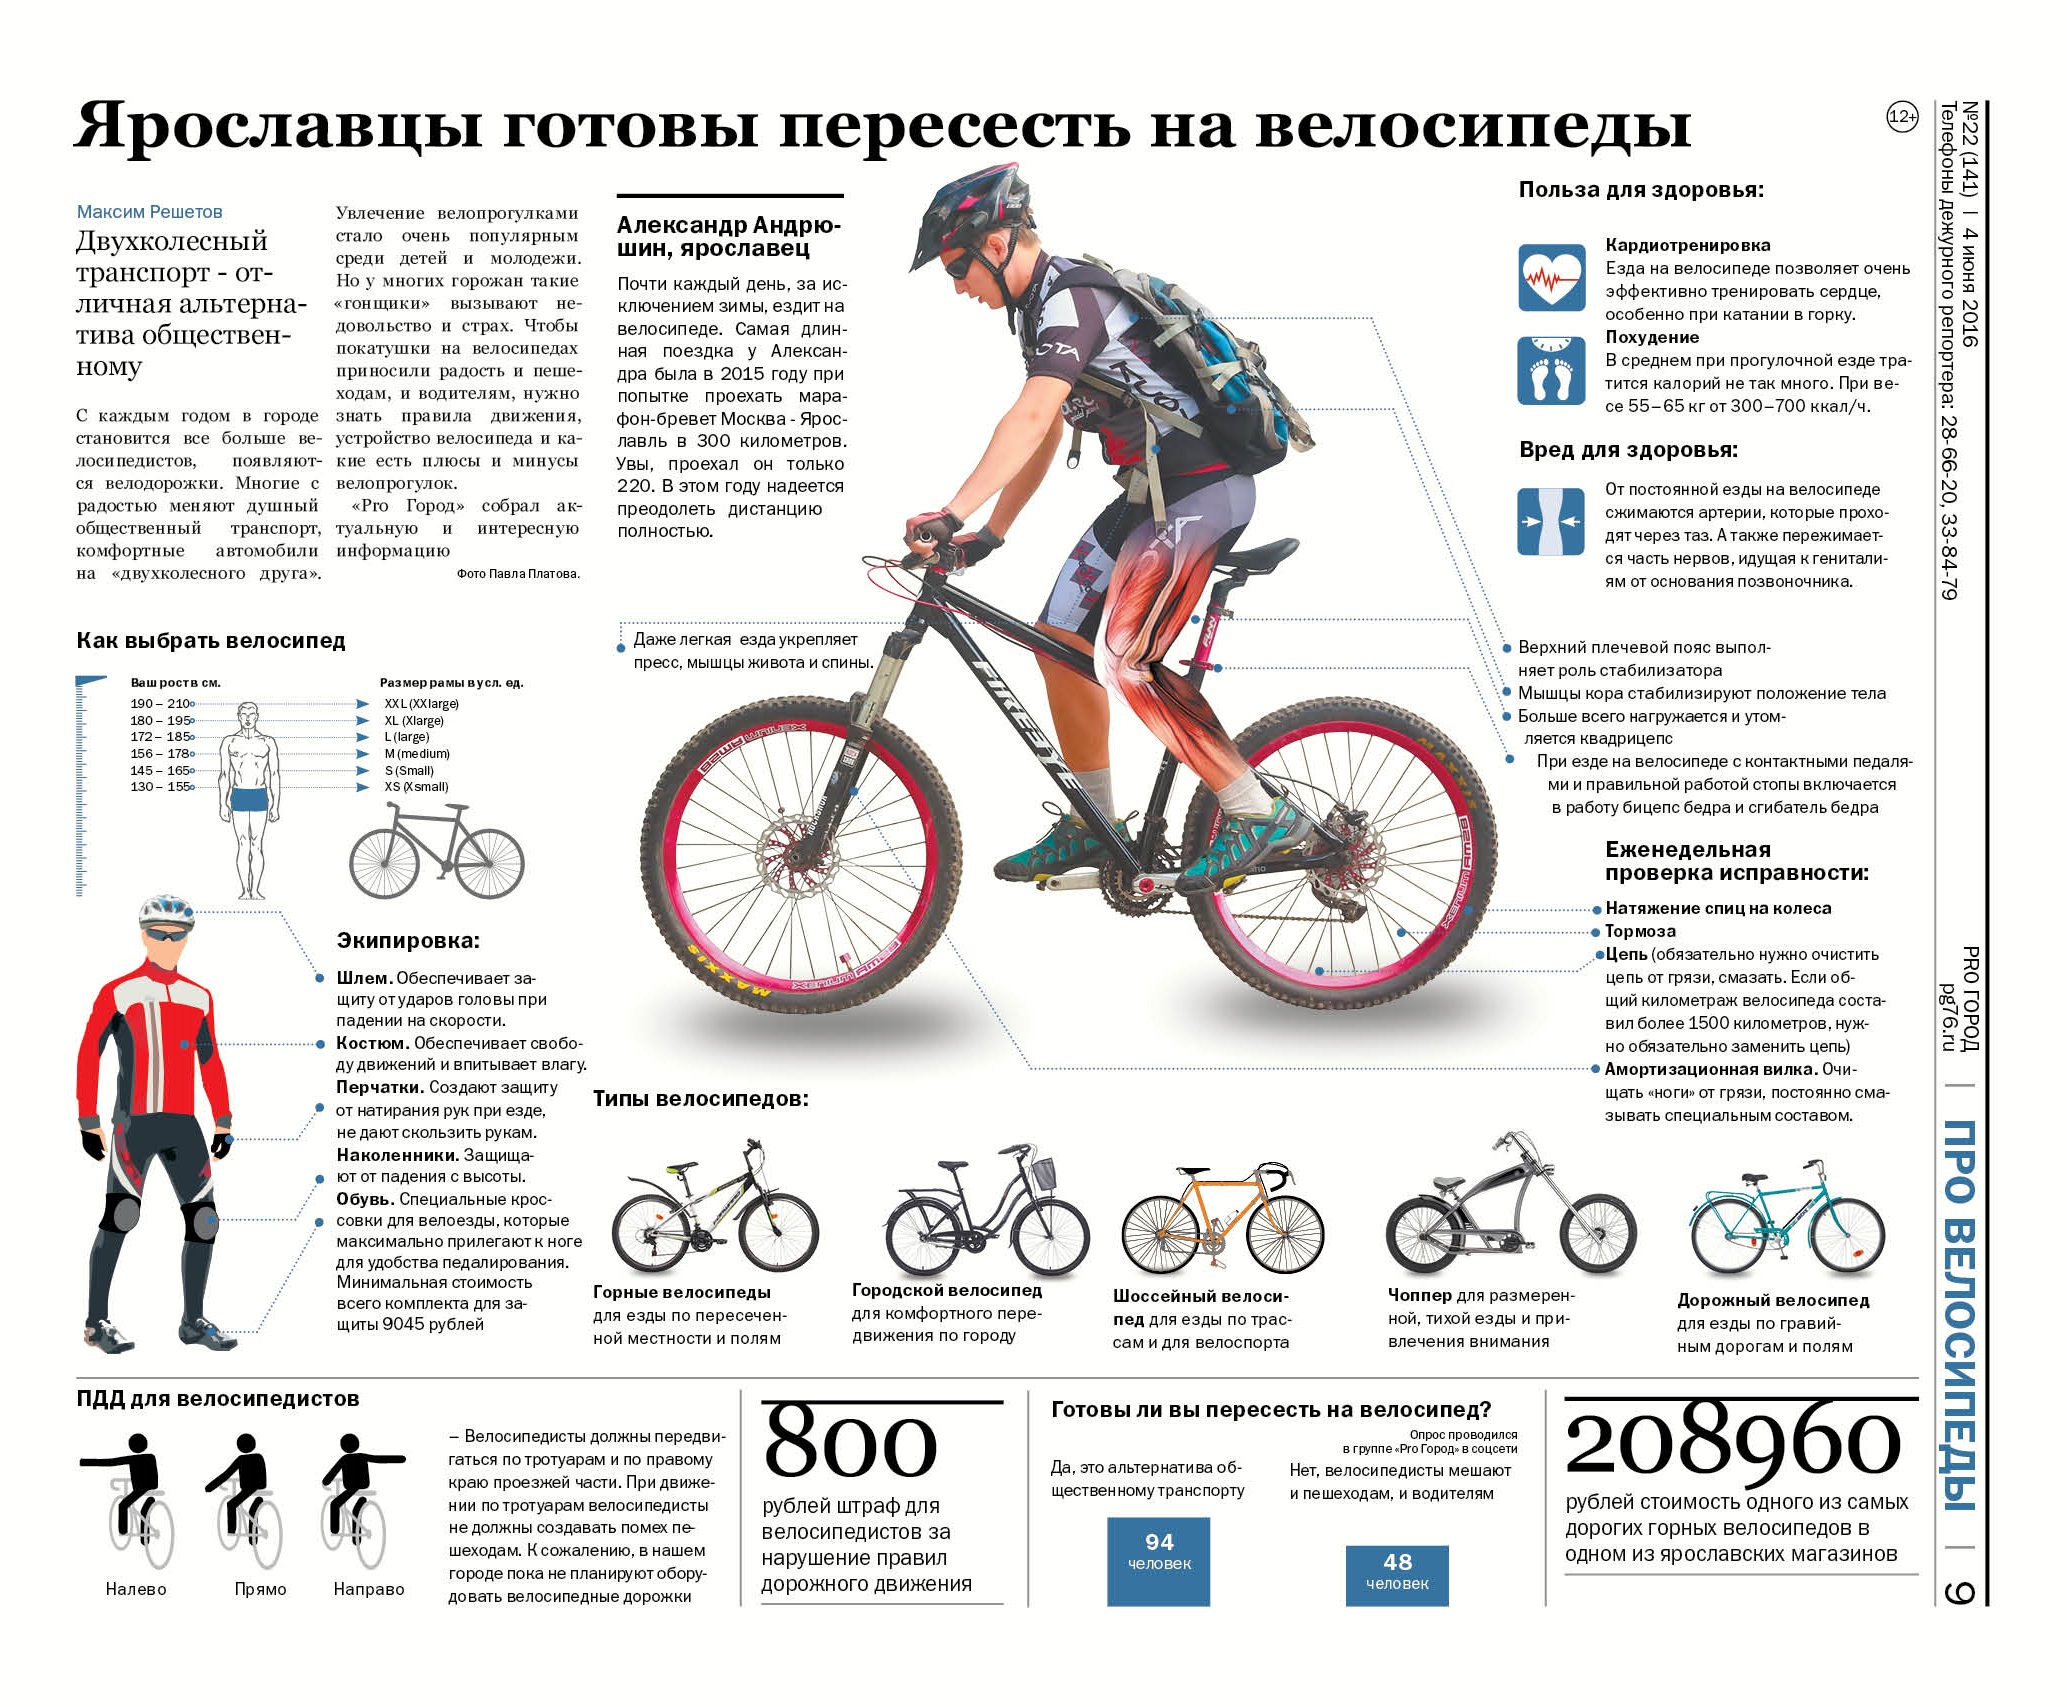 Какую мощность развивает велосипедист. Инфографика велосипед. Польза велосипеда. Преимущества велосипеда. Инфографика езда на велосипеде.